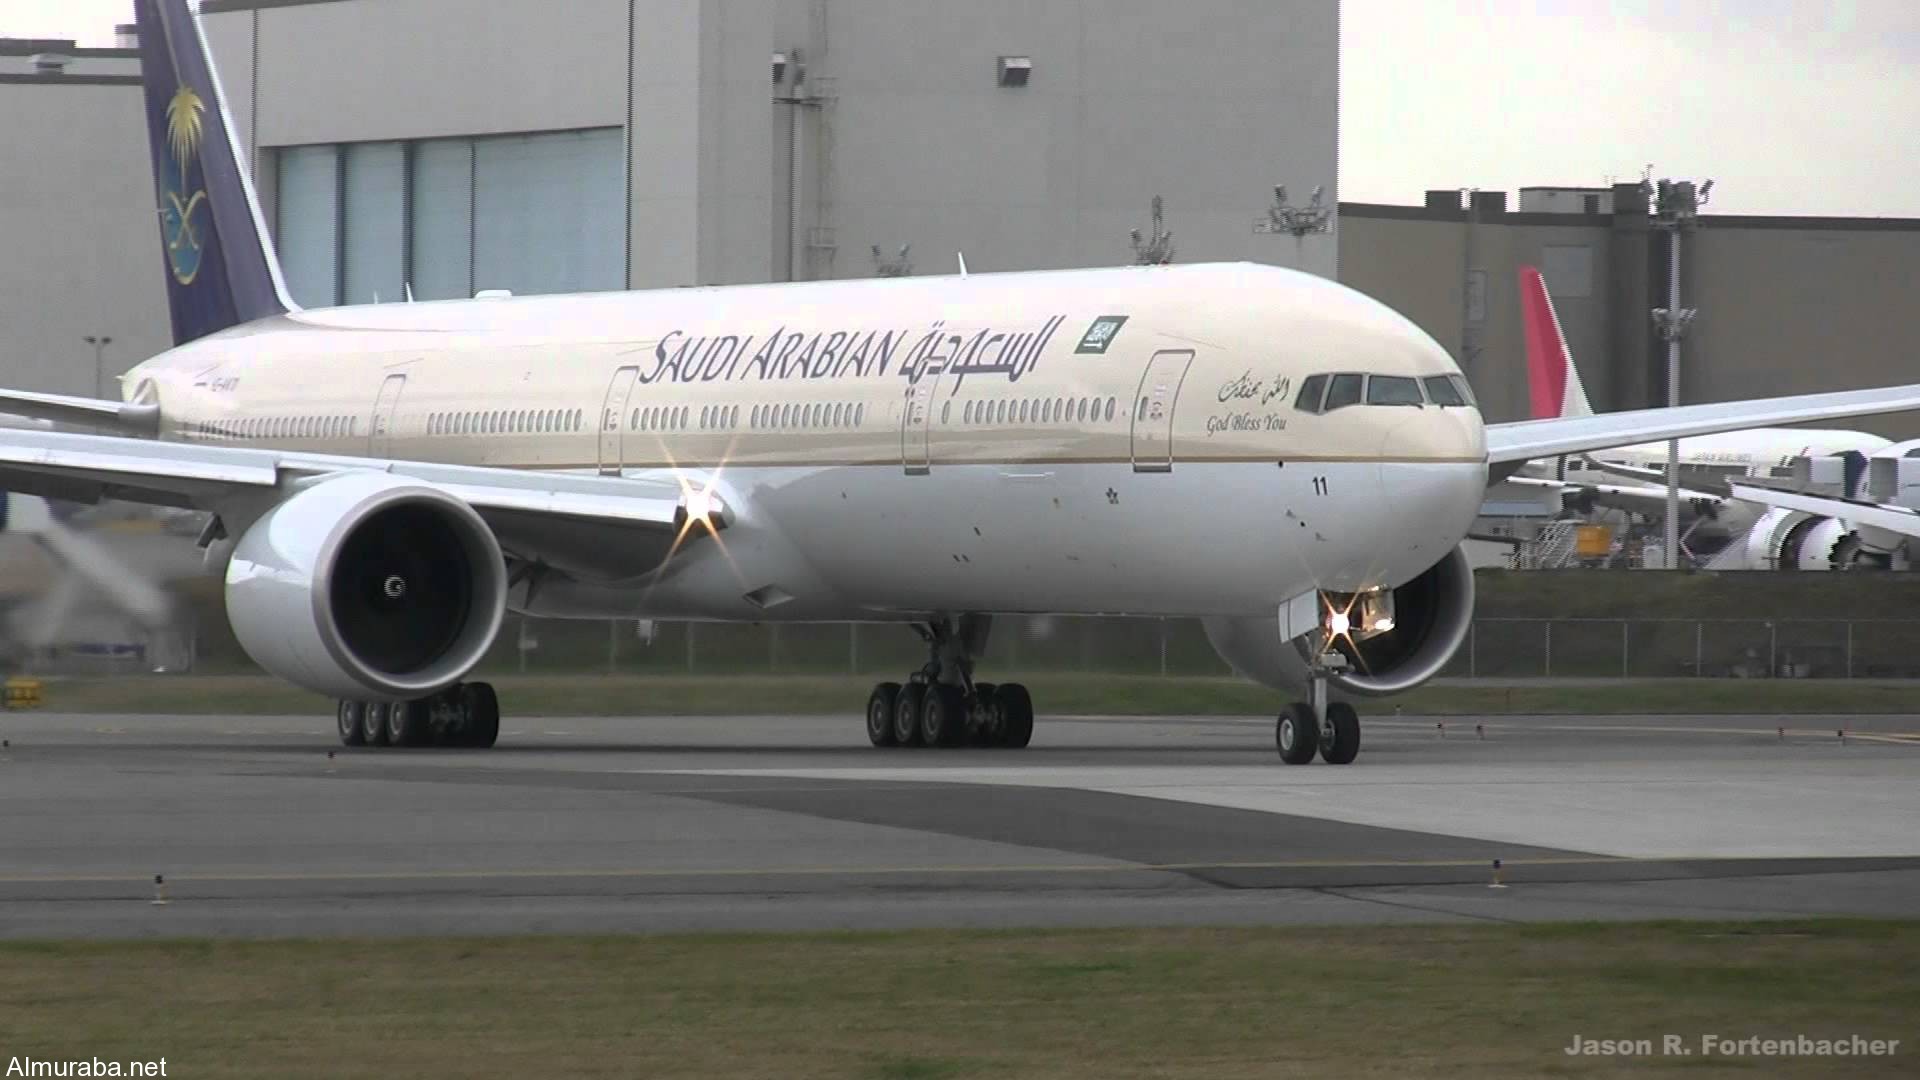 “فيديو” تقرير عن طائرة دريم لاينر بوينغ 787 التي ضمتها الخطوط السعودية والمشاكل التي أدت الى ايقافها بعض الدول